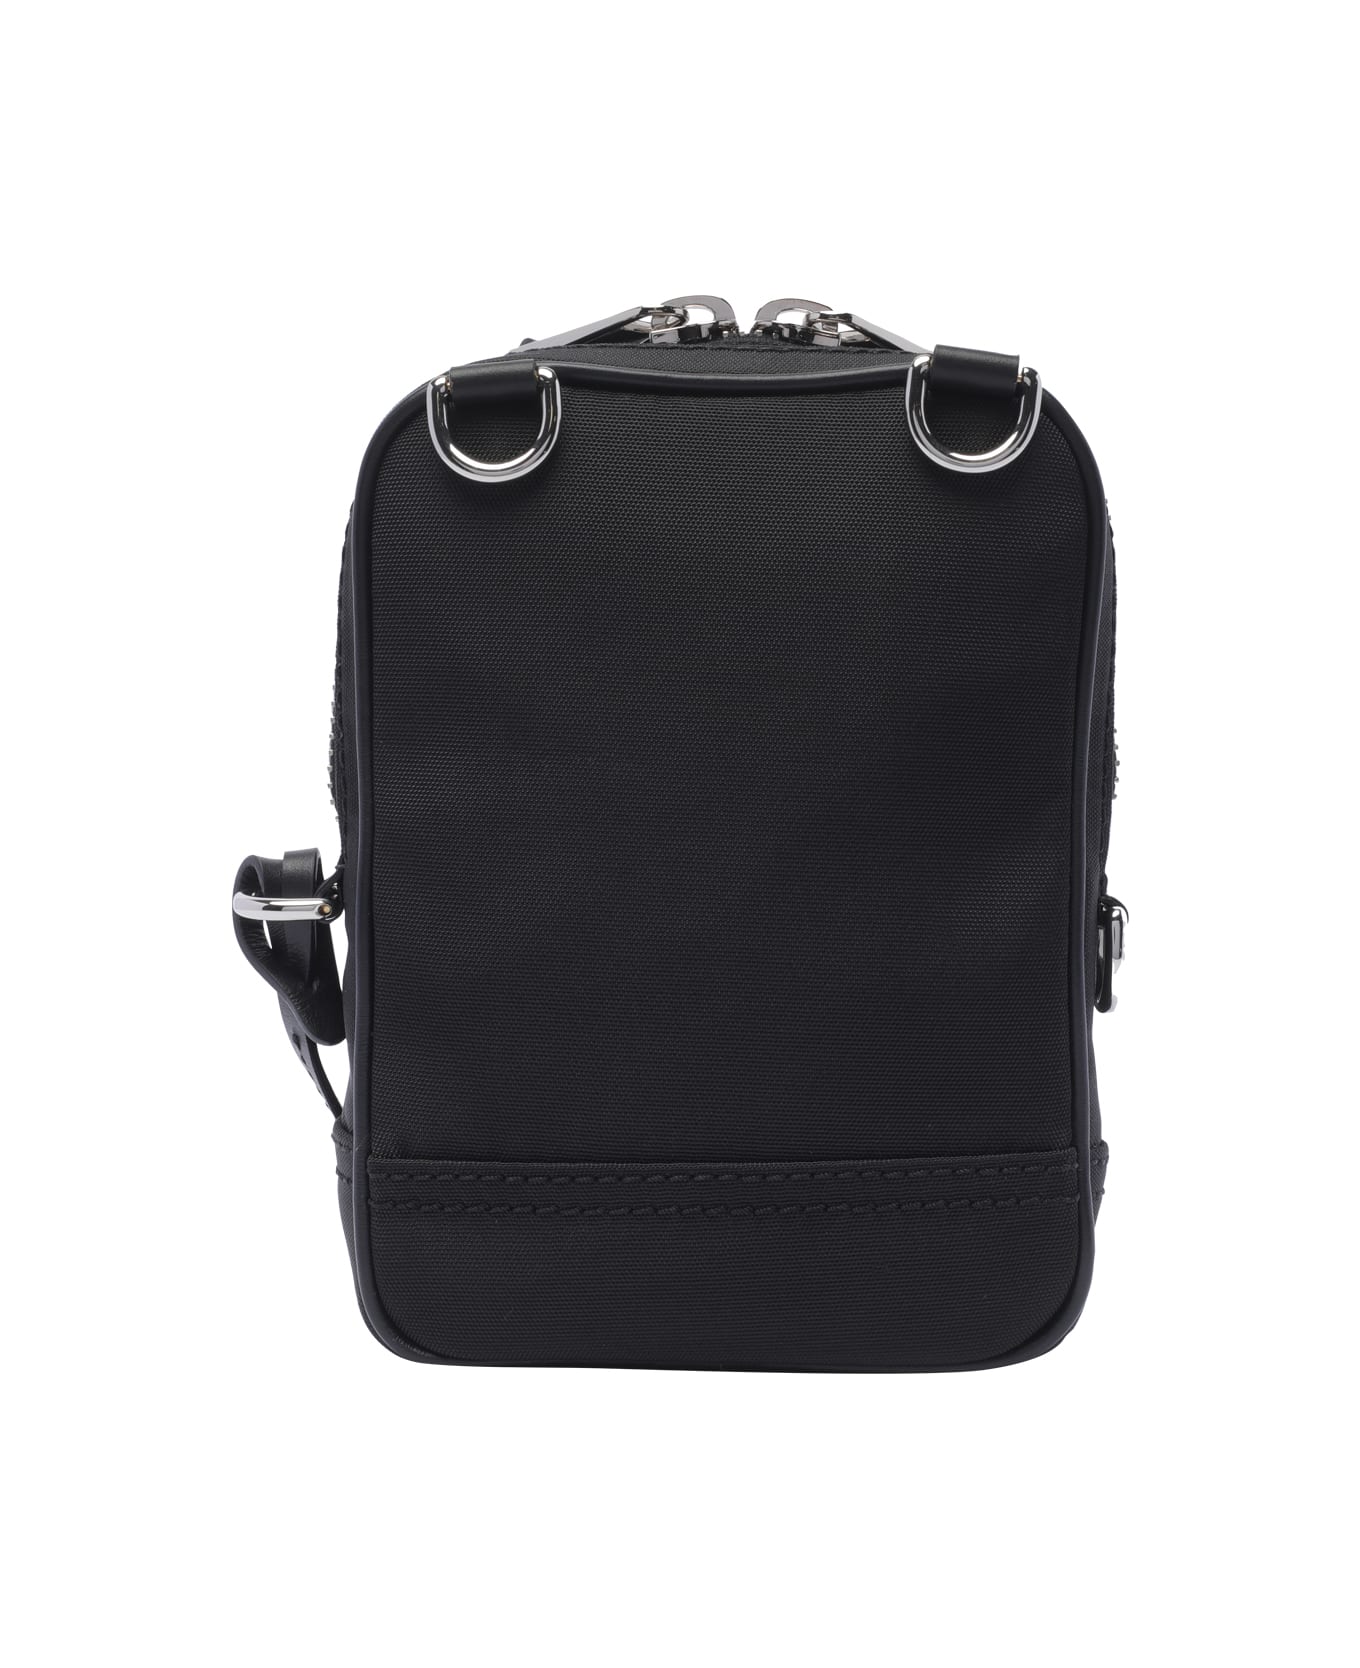 Moschino Couture Messenger Bag - Black